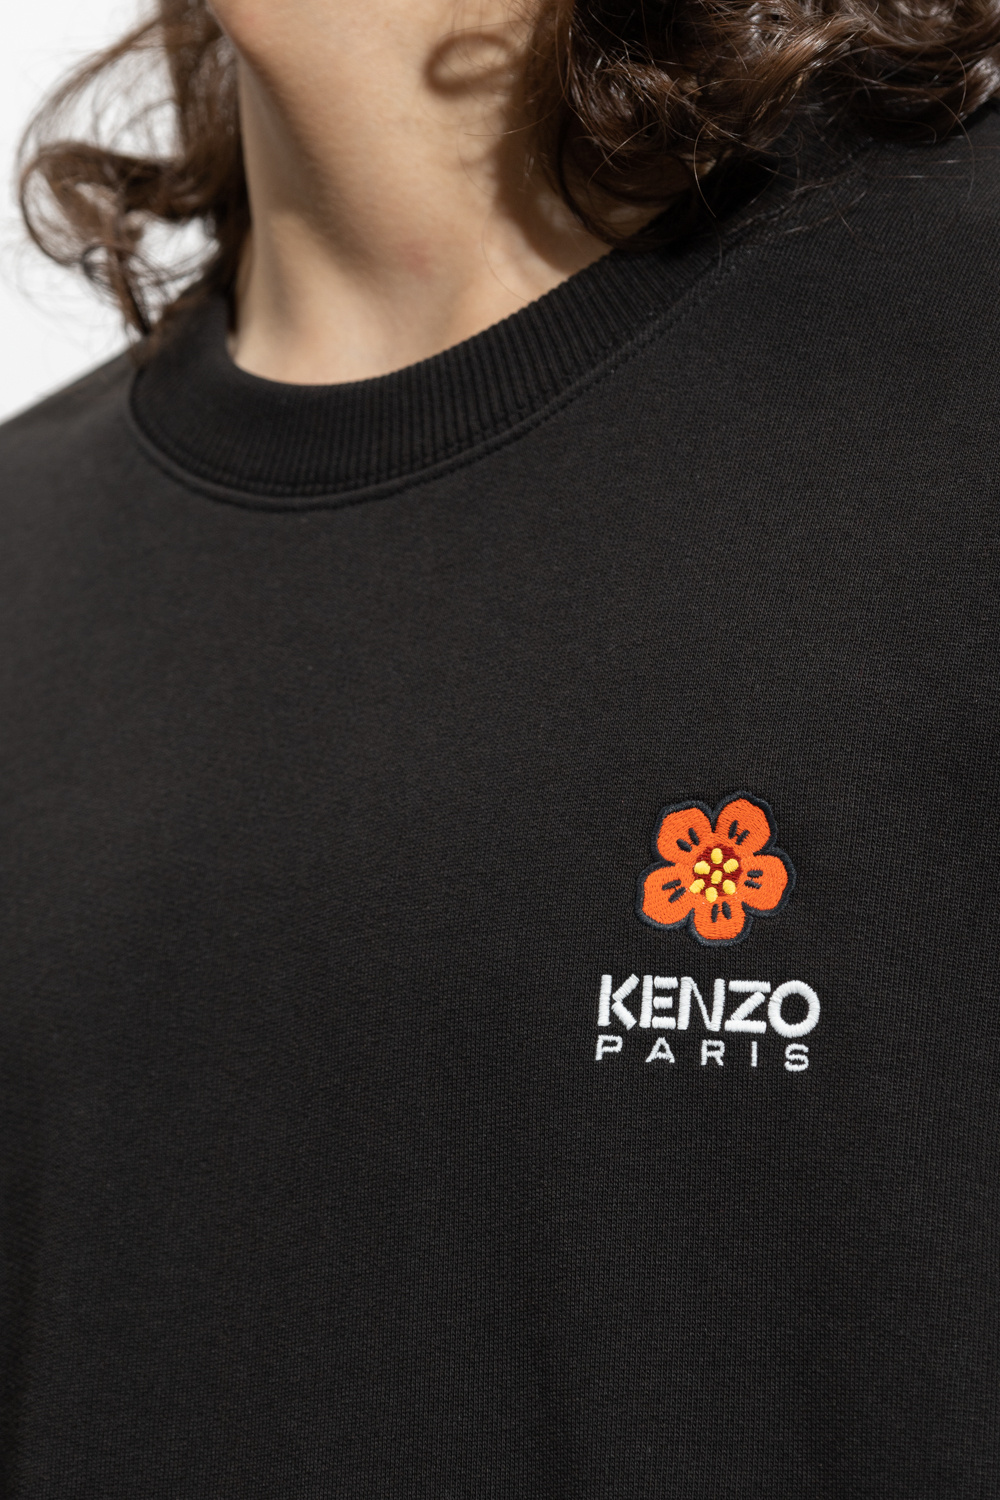 Kenzo Uyn M Ambityon UW Shirt Long Sleeve Turtle Neck